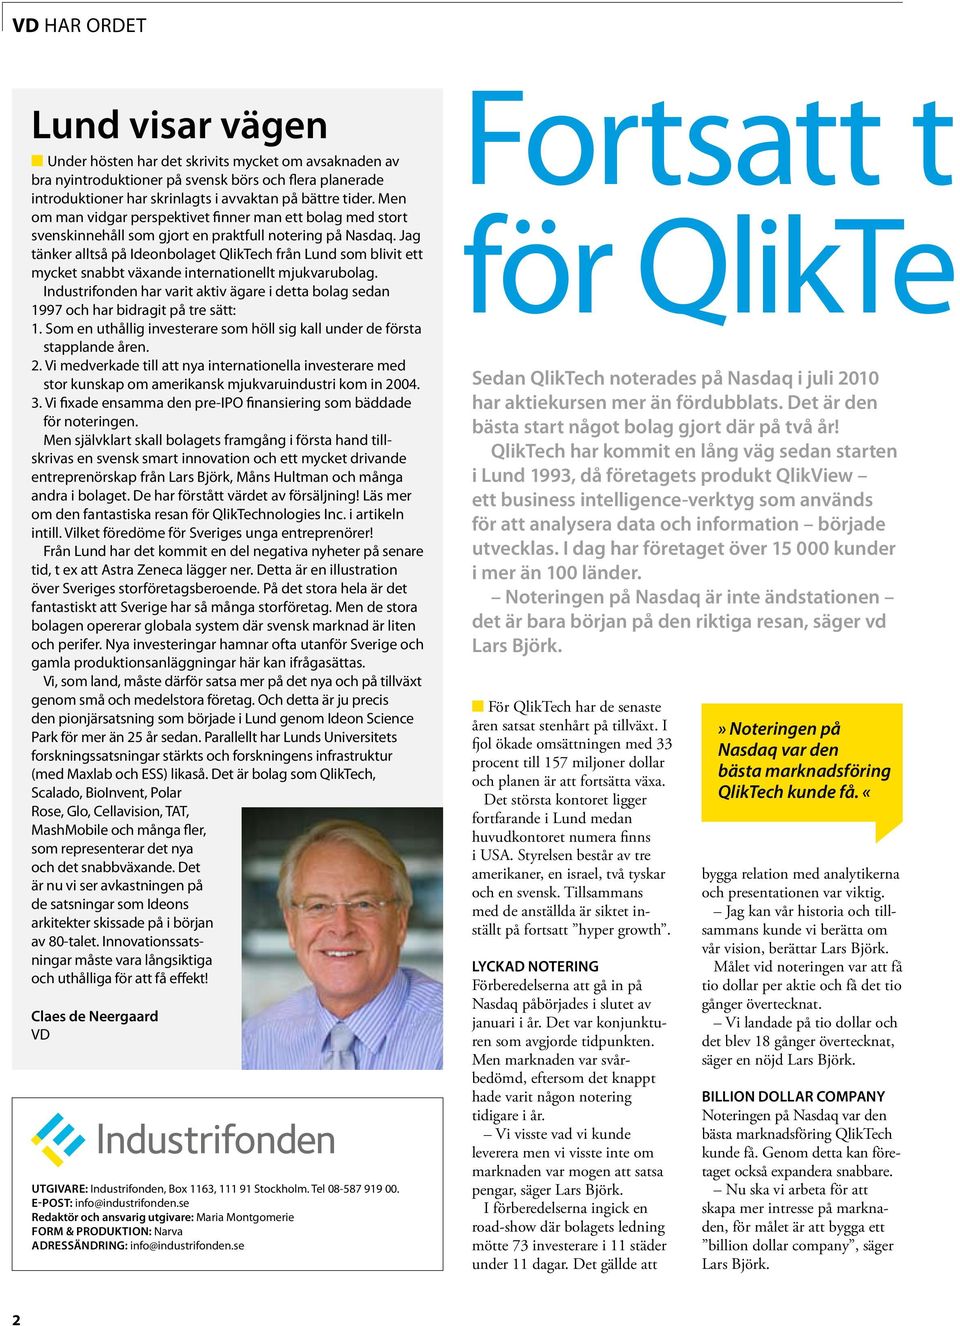 Jag tänker alltså på Ideonbolaget QlikTech från Lund som blivit ett mycket snabbt växande internationellt mjukvarubolag.